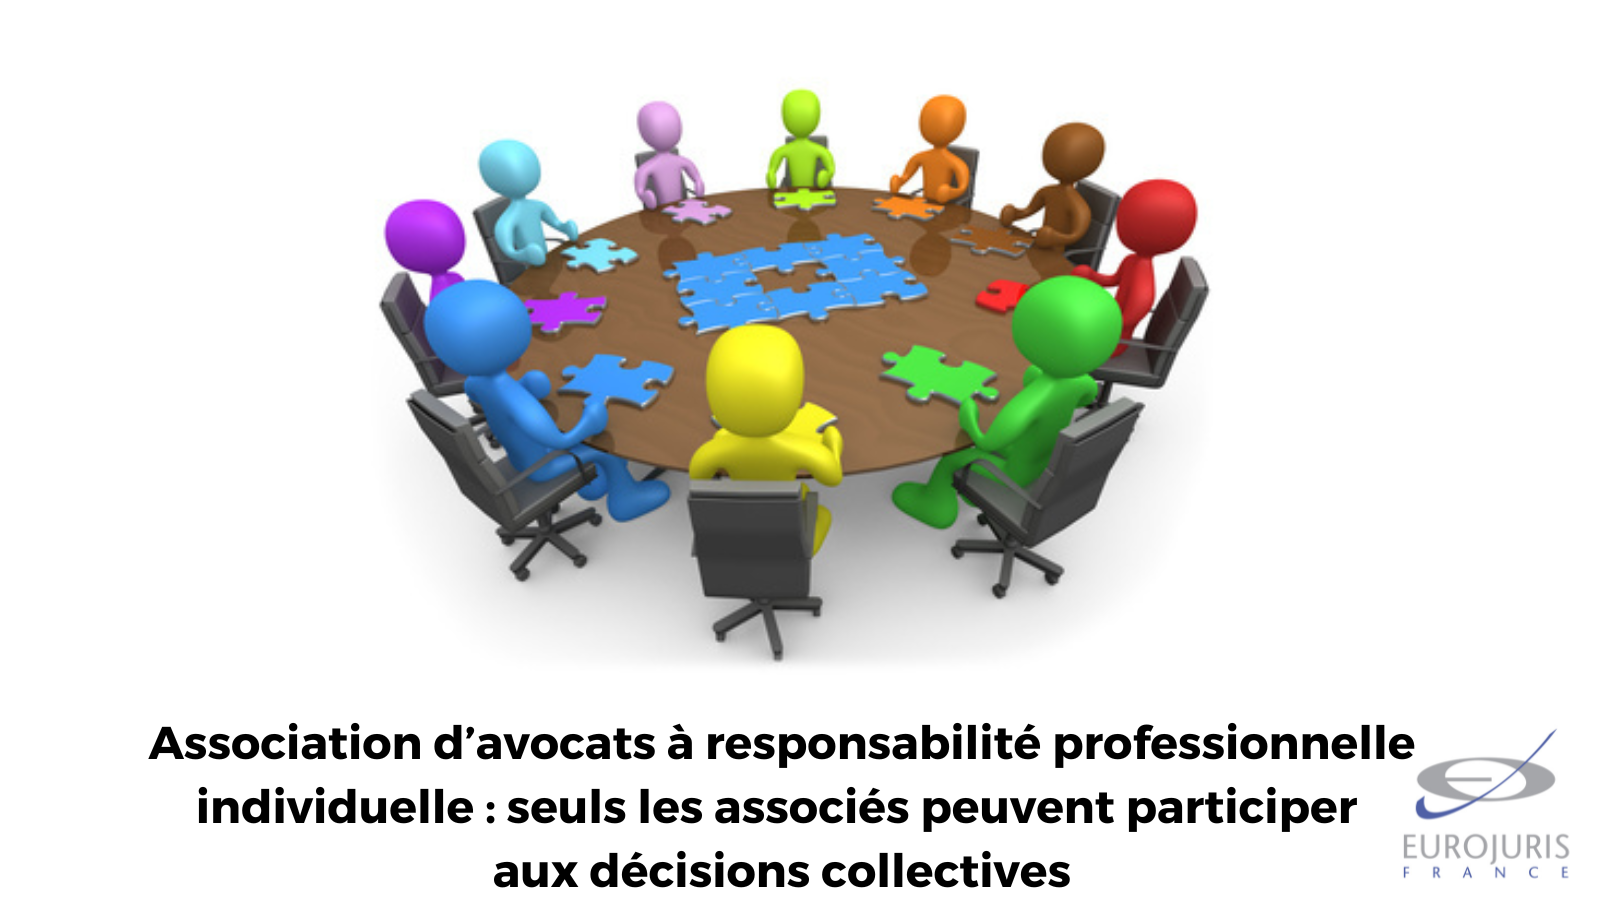 Association d’avocats à responsabilité professionnelle individuelle : seuls les associés peuvent participer aux décisions collectives